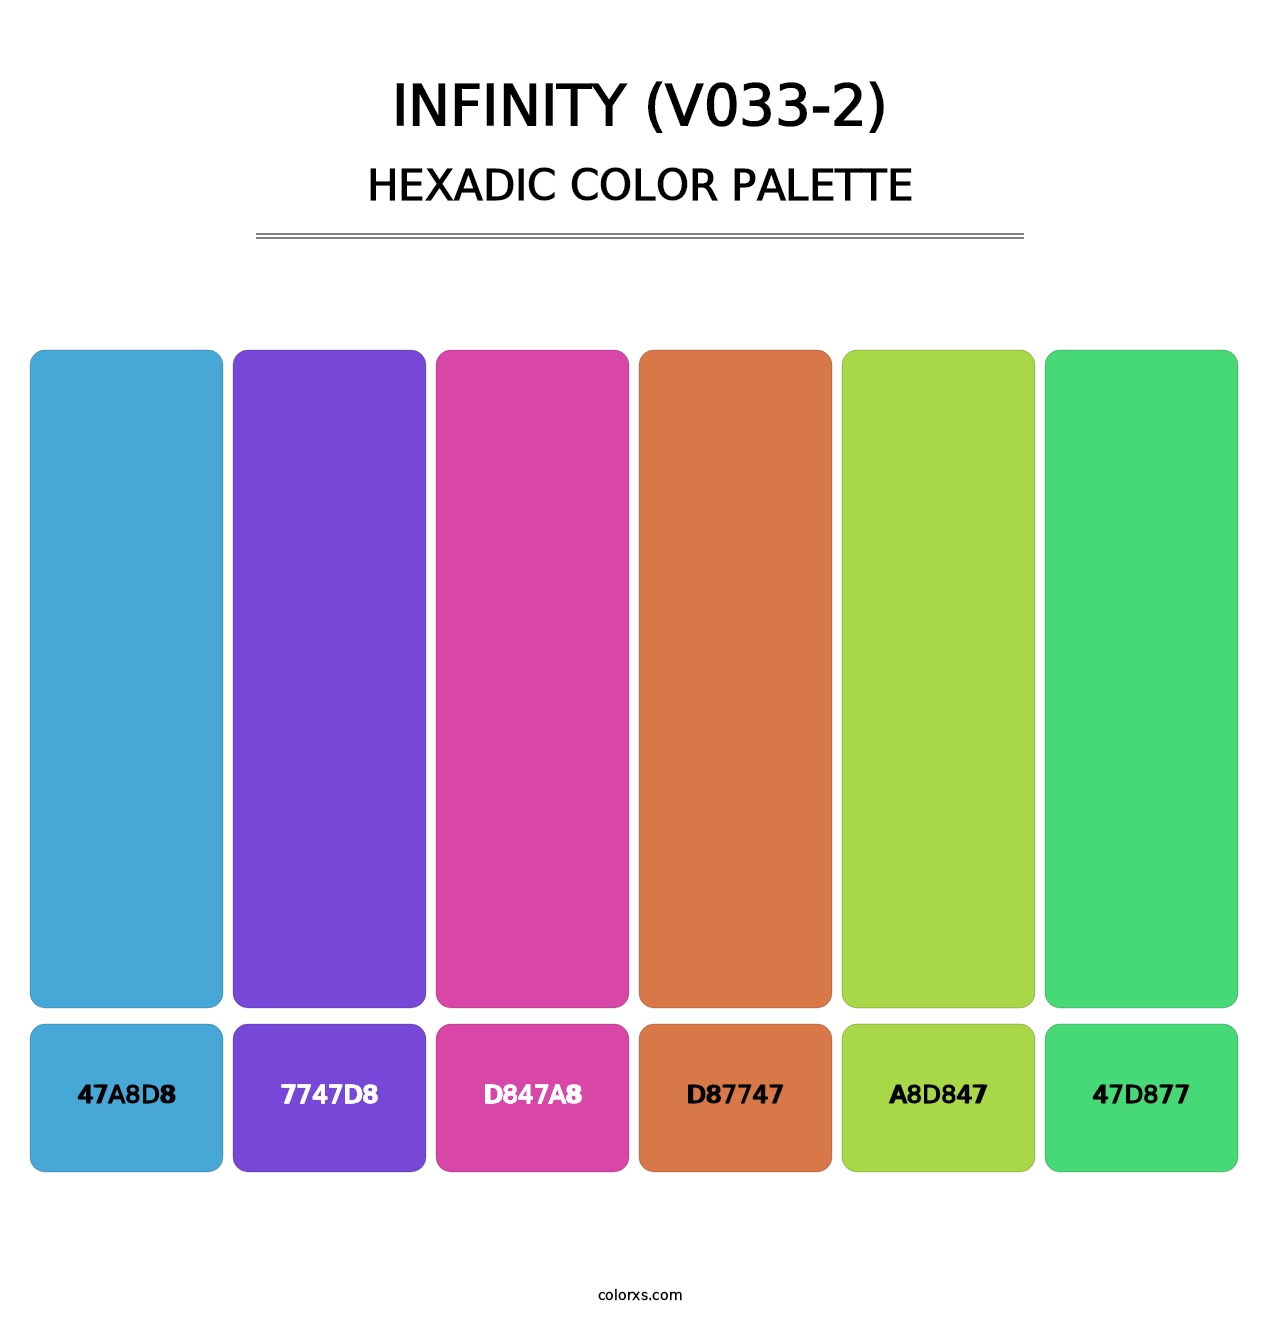 Infinity (V033-2) - Hexadic Color Palette